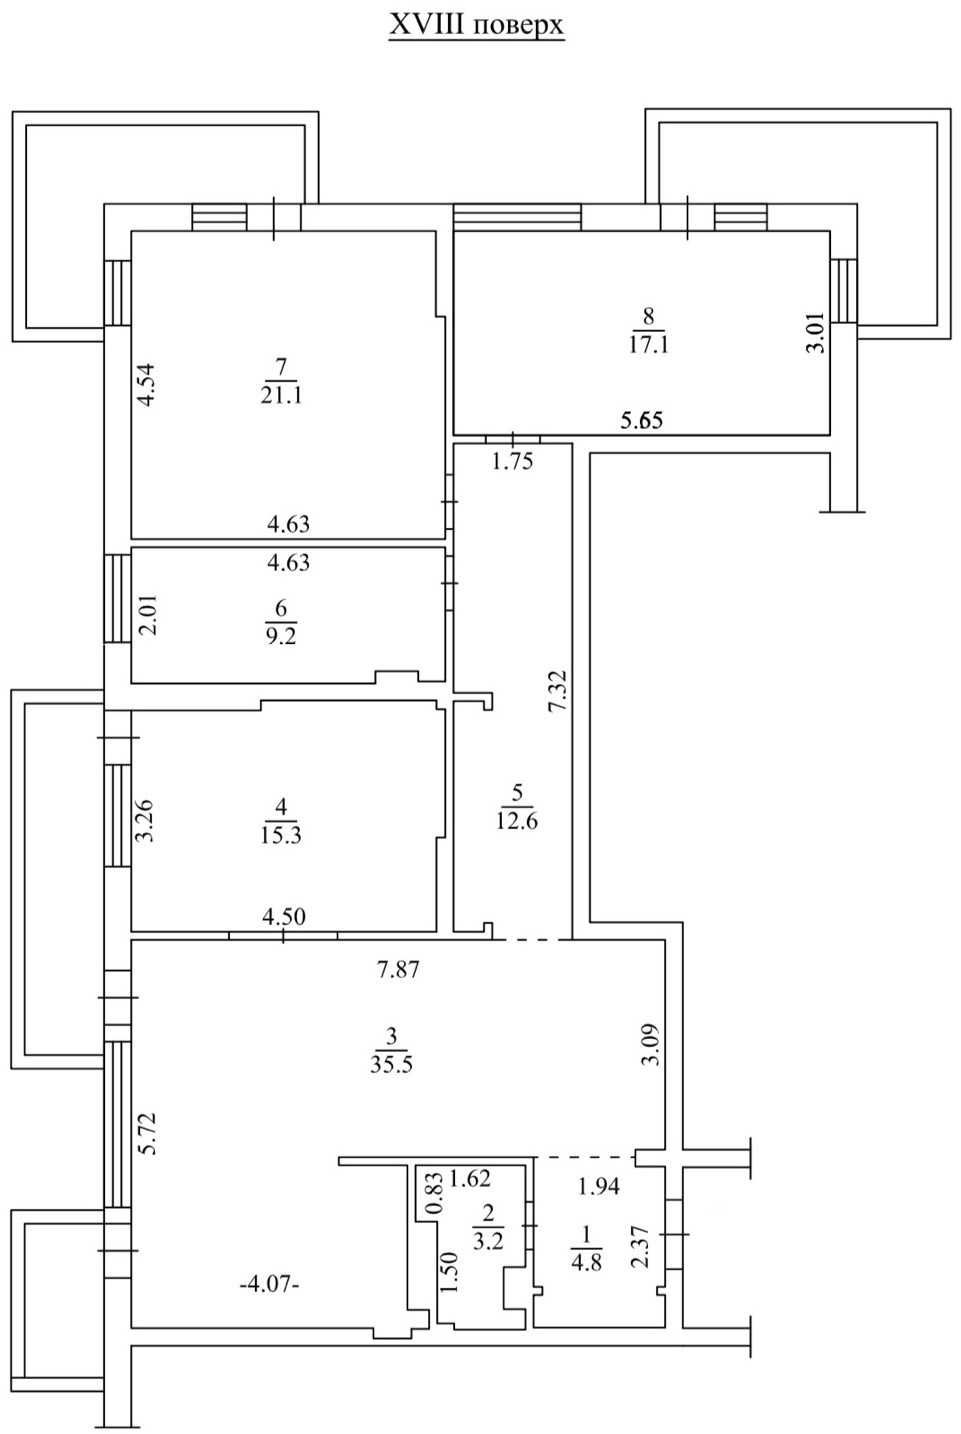 Щербаковского 52 - продам просторную, видовую 3к квартиру 126 м2